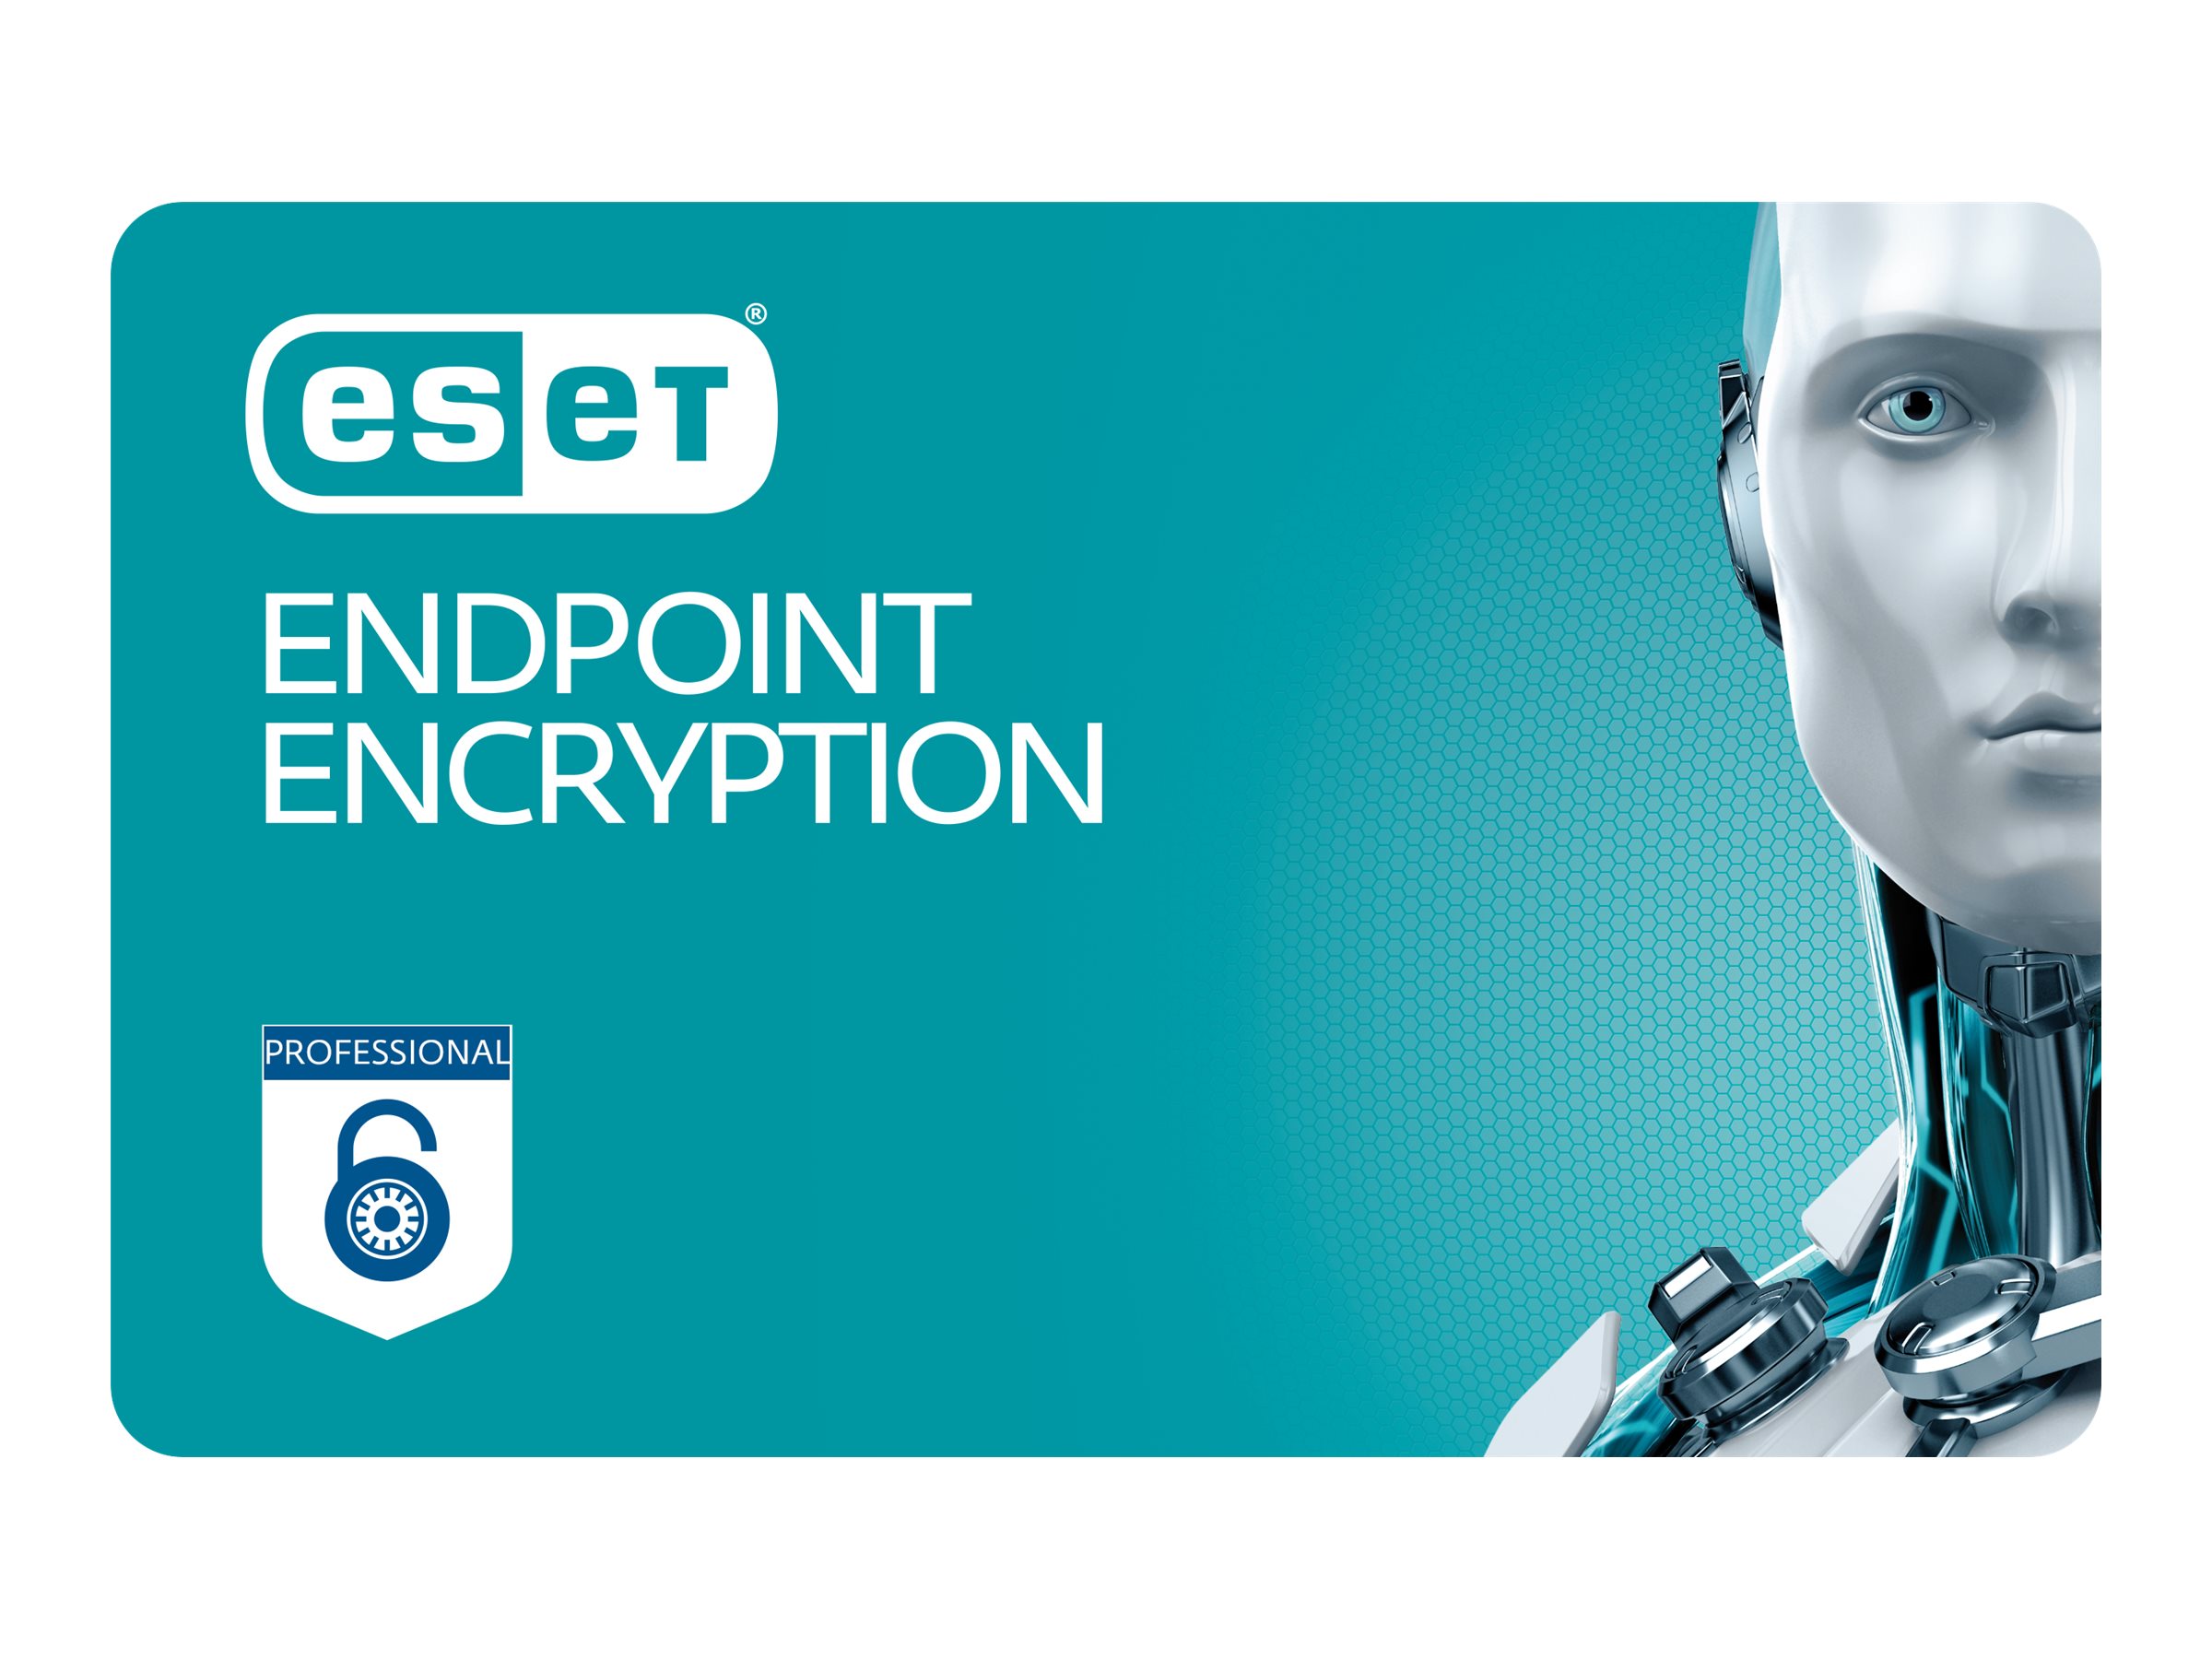 ESET Endpoint Encryption -  Pro - Lizenz per User (1-10 User) inklusive 3 Jahre Aktualisierungsgarantie